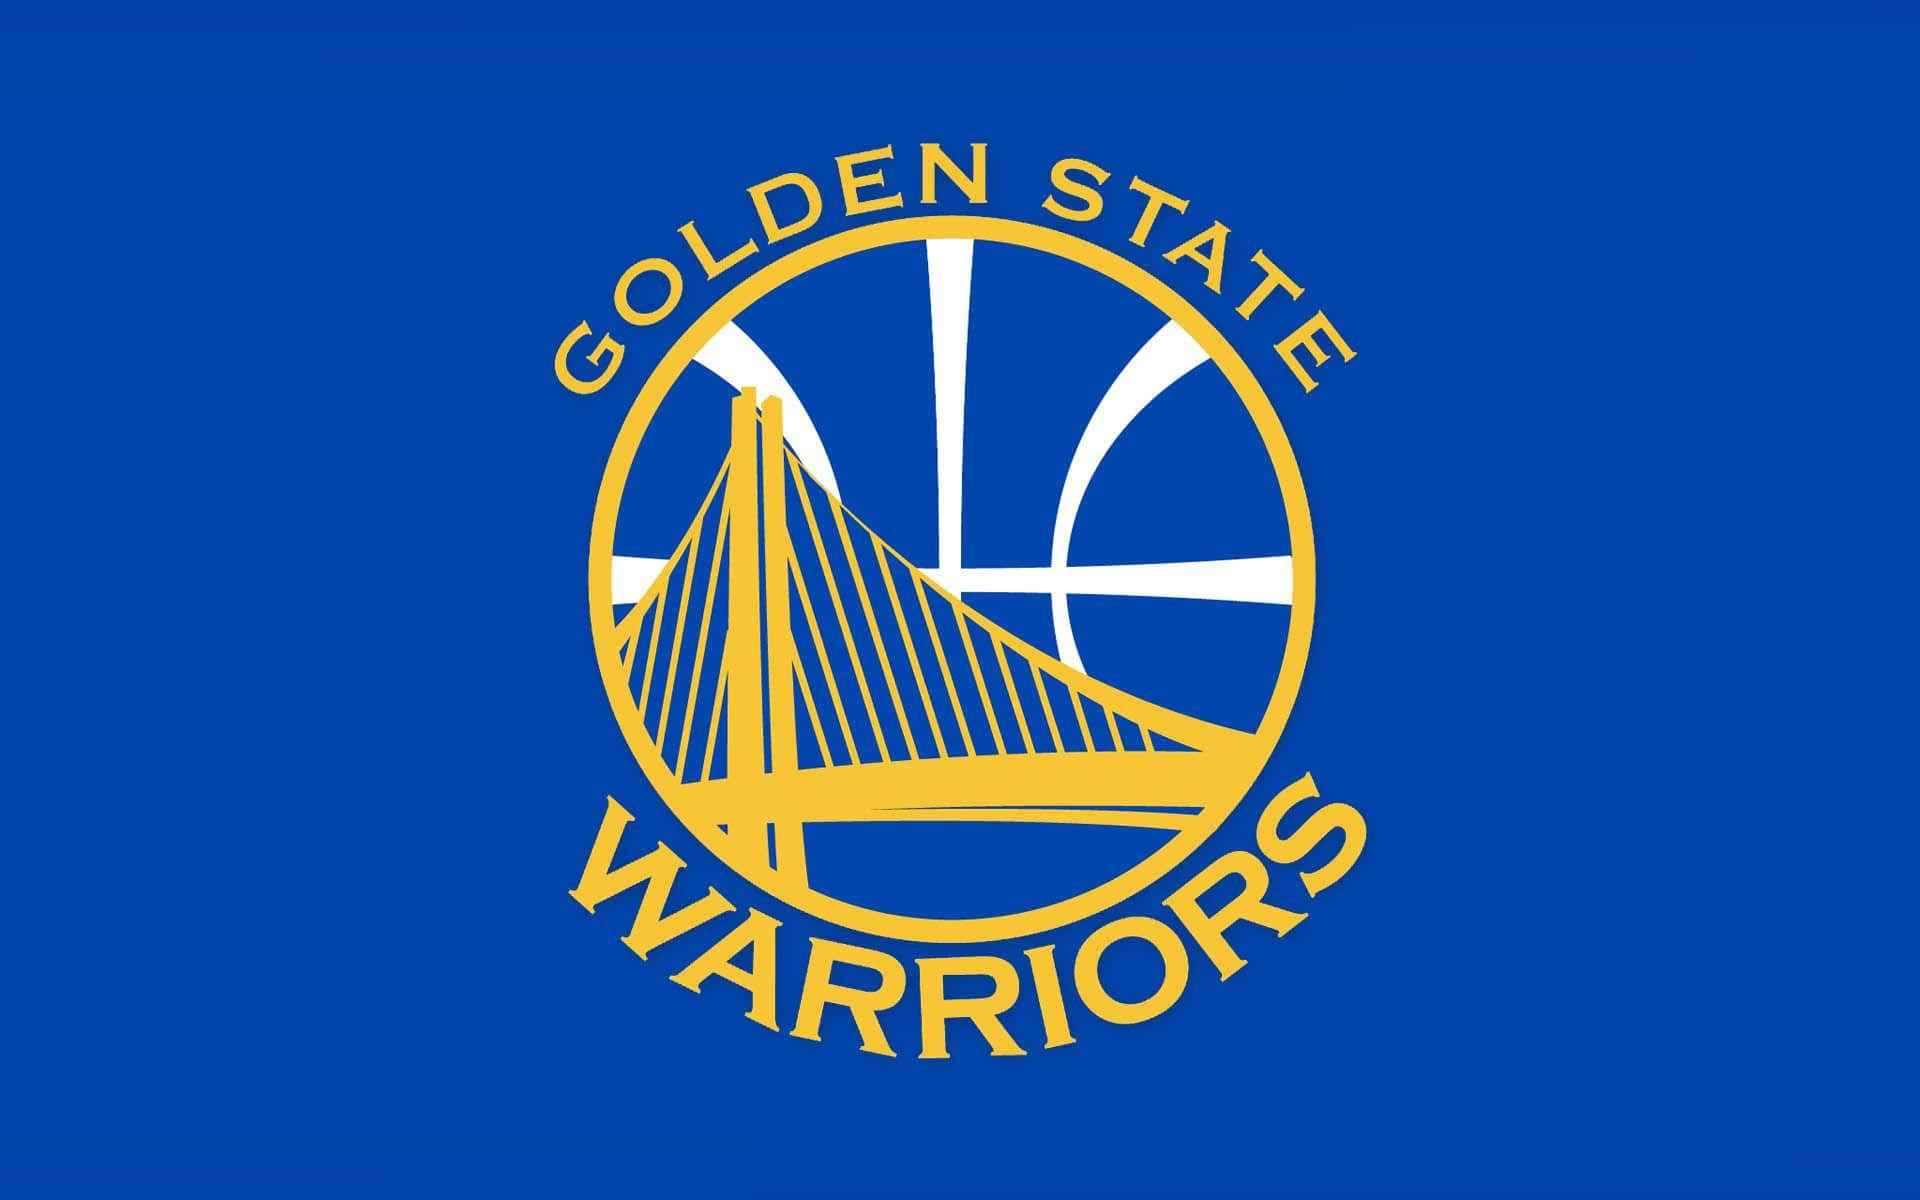 Logotipooficial De Los Golden State Warriors Con El Icónico Azul Y Amarillo Gsw. Fondo de pantalla